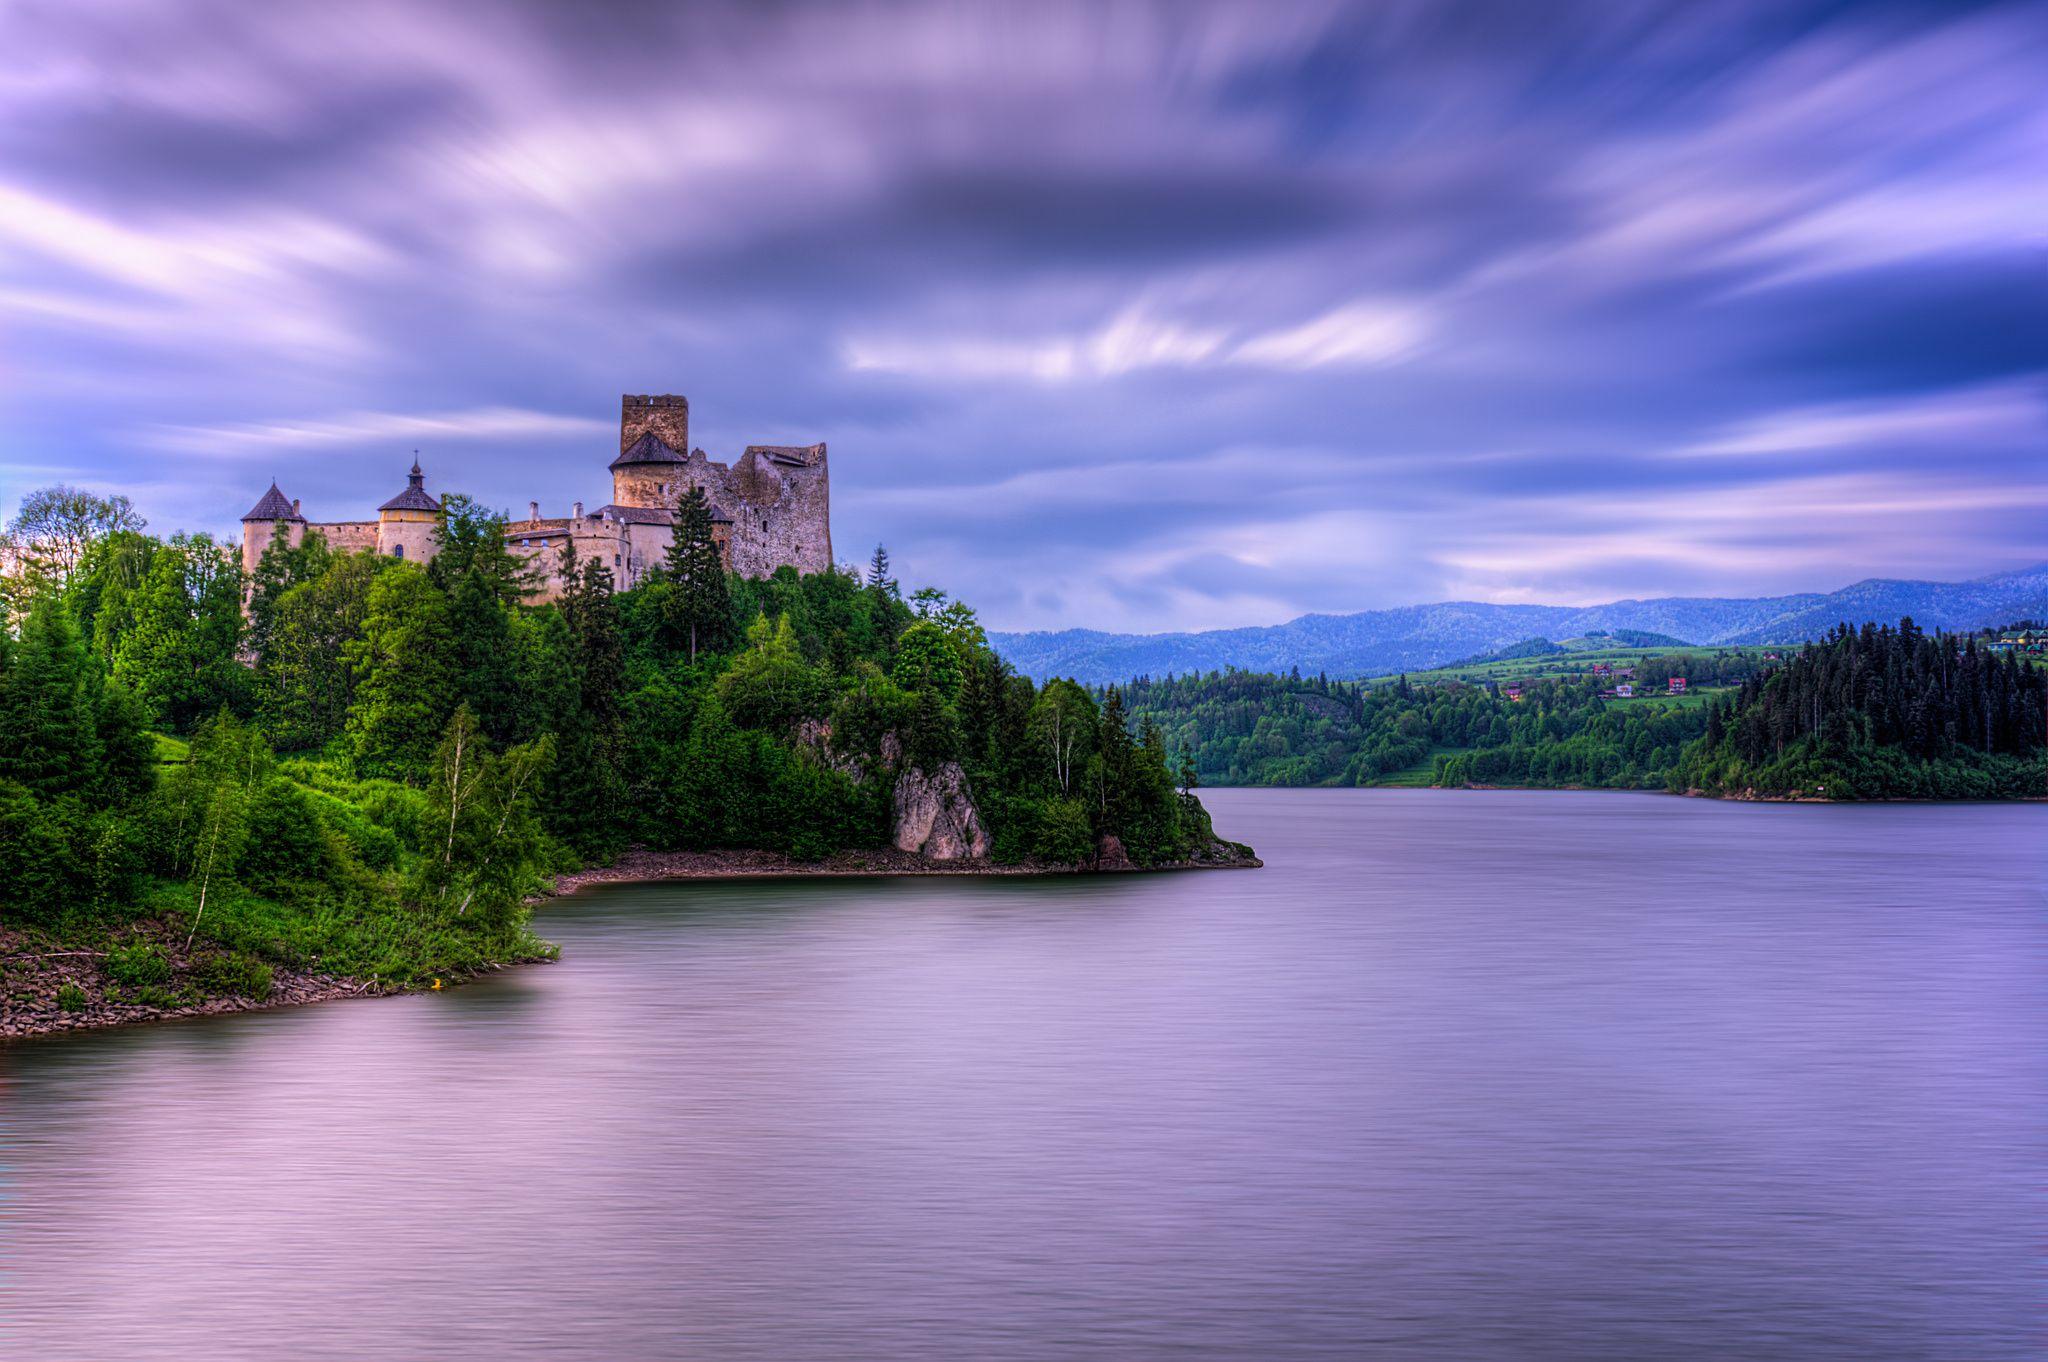 Вода на холме. Замок Лейк-Касл. Замок Бренненбург. Пейзаж с замком. Замок на берегу озера.